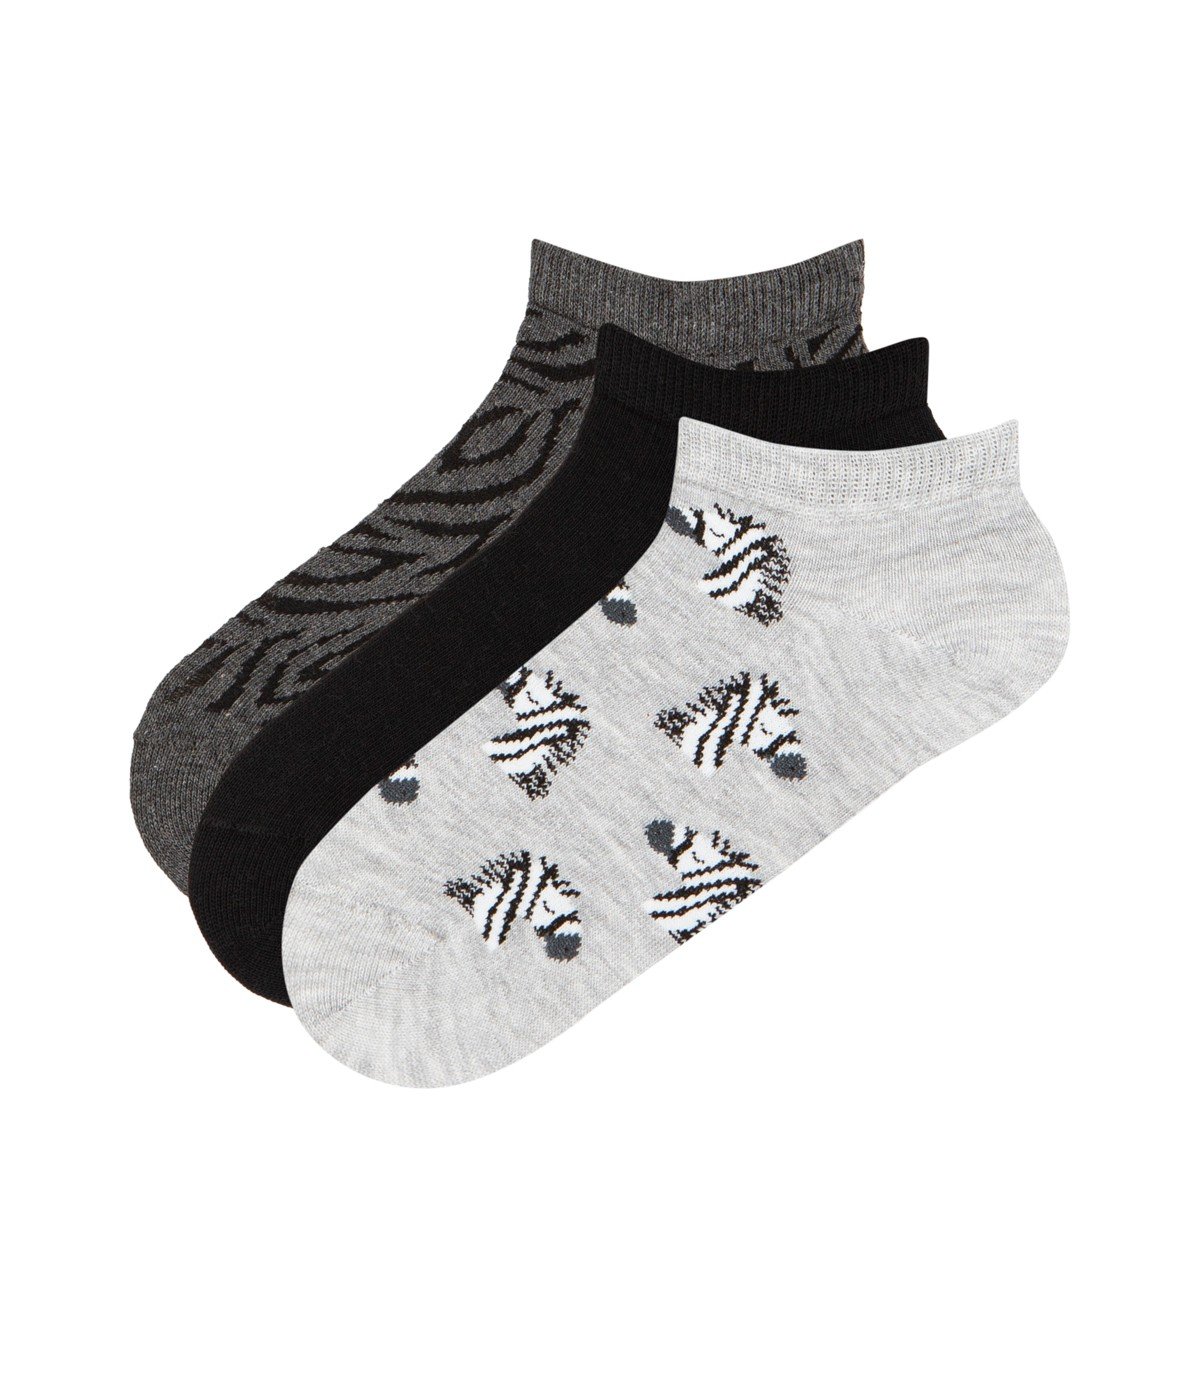 Socks Zebra 3 in 1